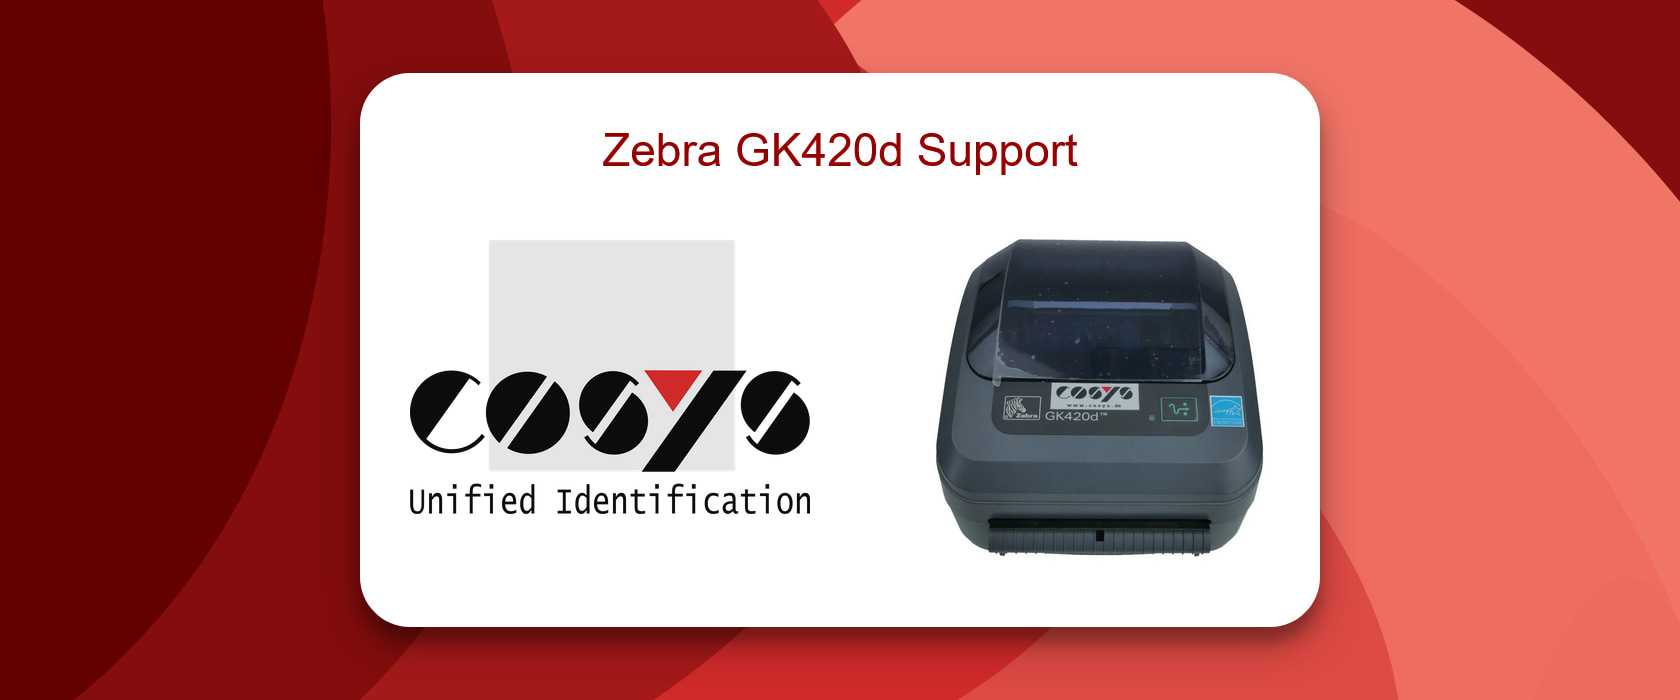 Zebra GK420d Support